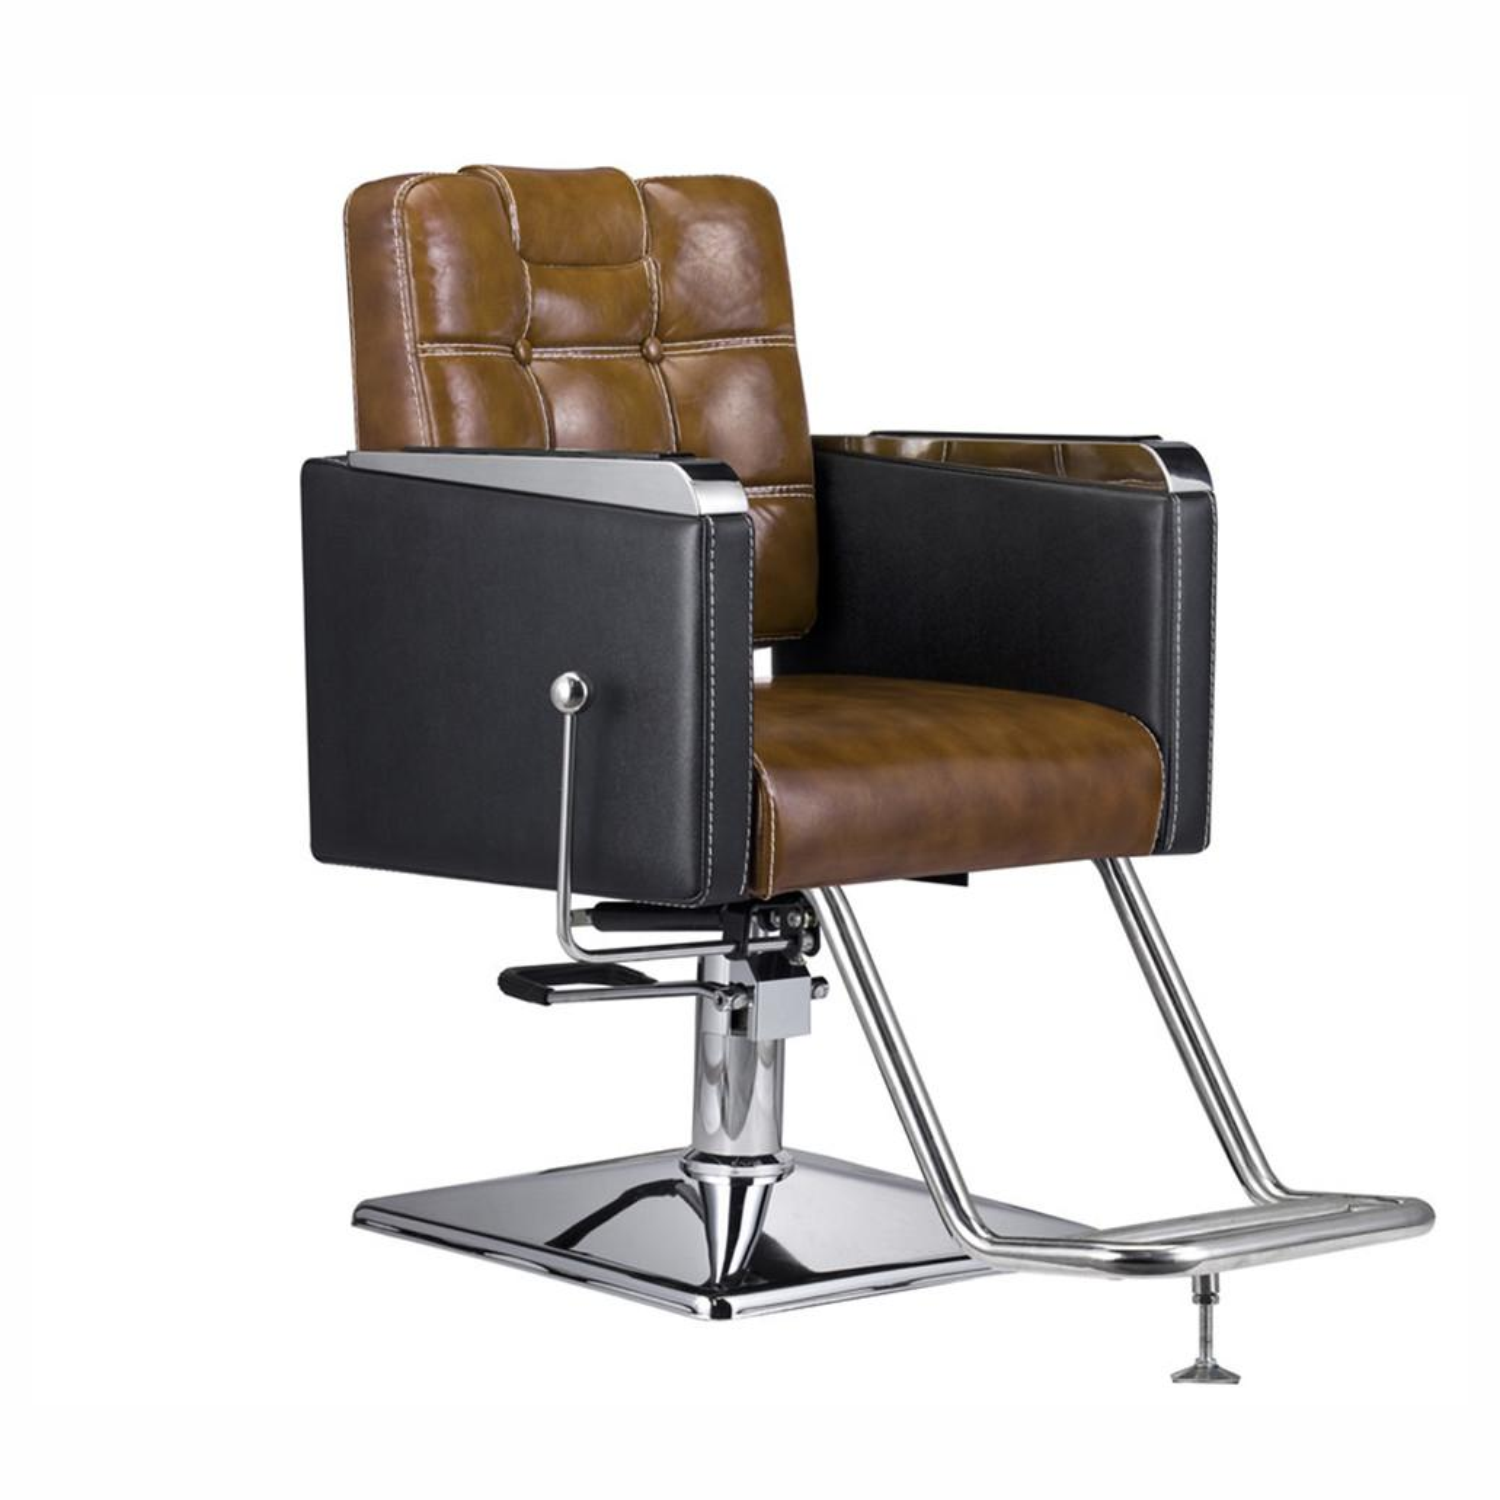 Hydraulic Hair Salon Chair